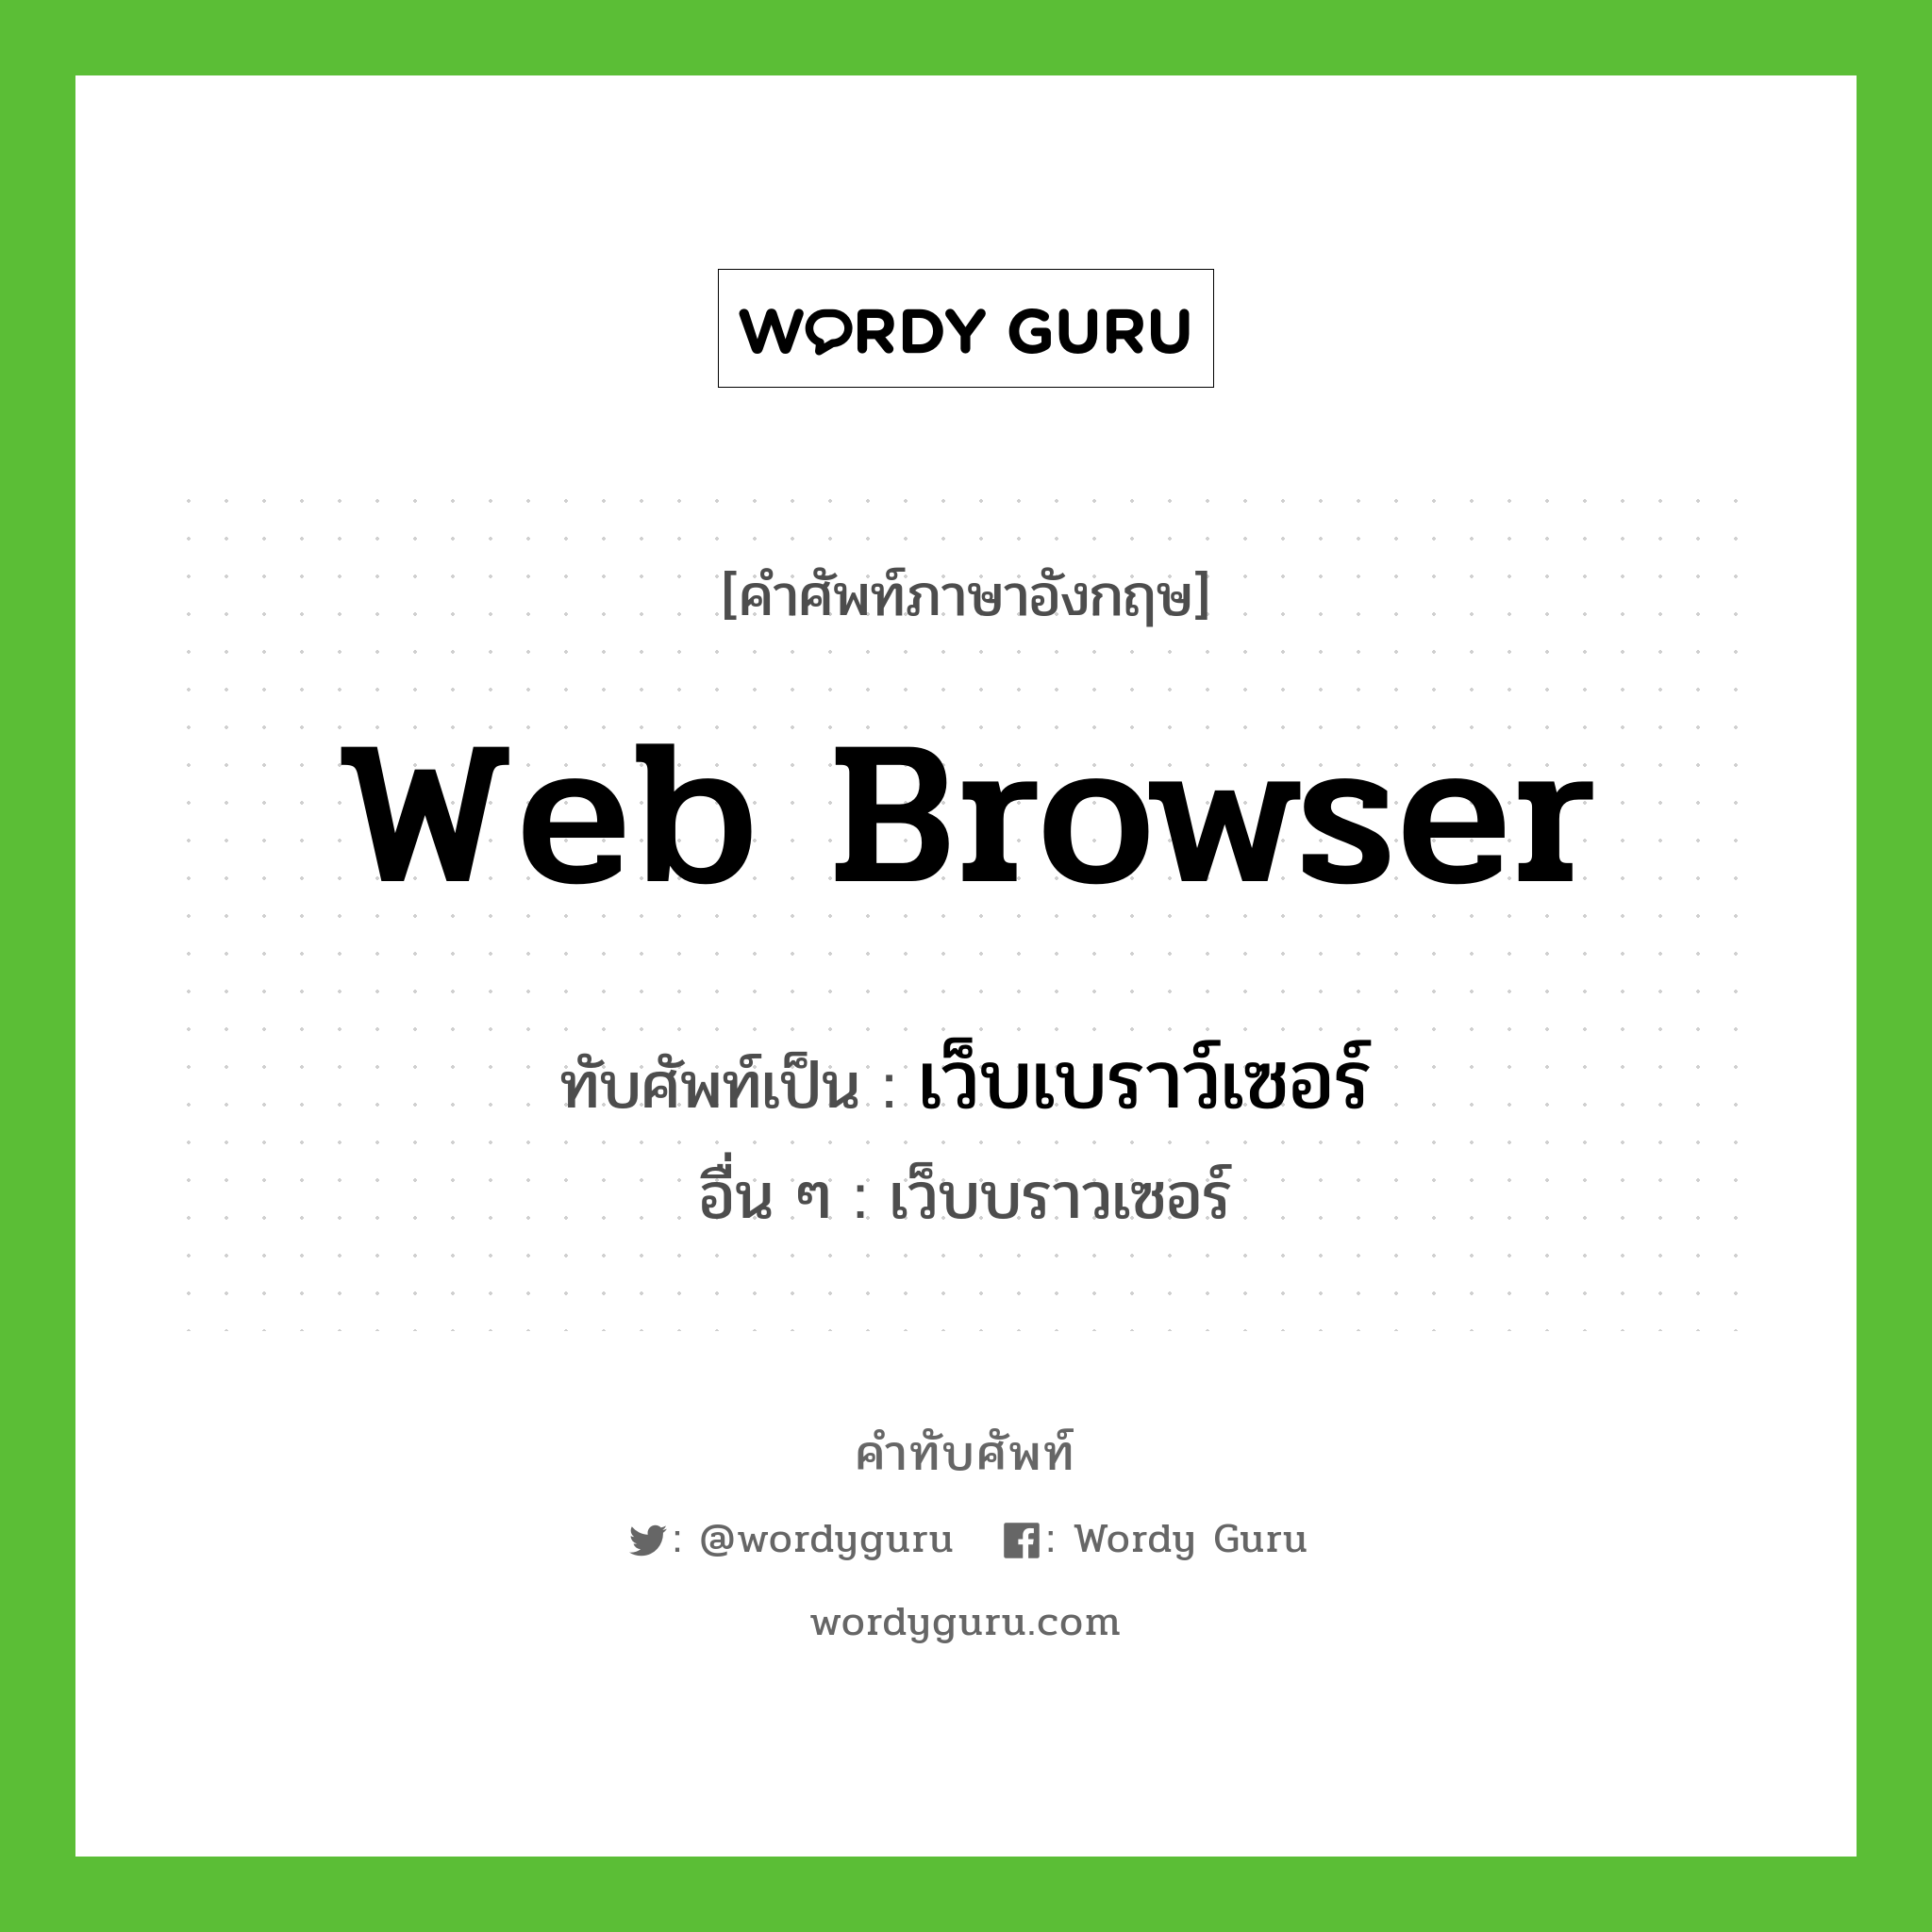 web browser เขียนเป็นคำไทยว่าอะไร?, คำศัพท์ภาษาอังกฤษ web browser ทับศัพท์เป็น เว็บเบราว์เซอร์ อื่น ๆ เว็บบราวเซอร์